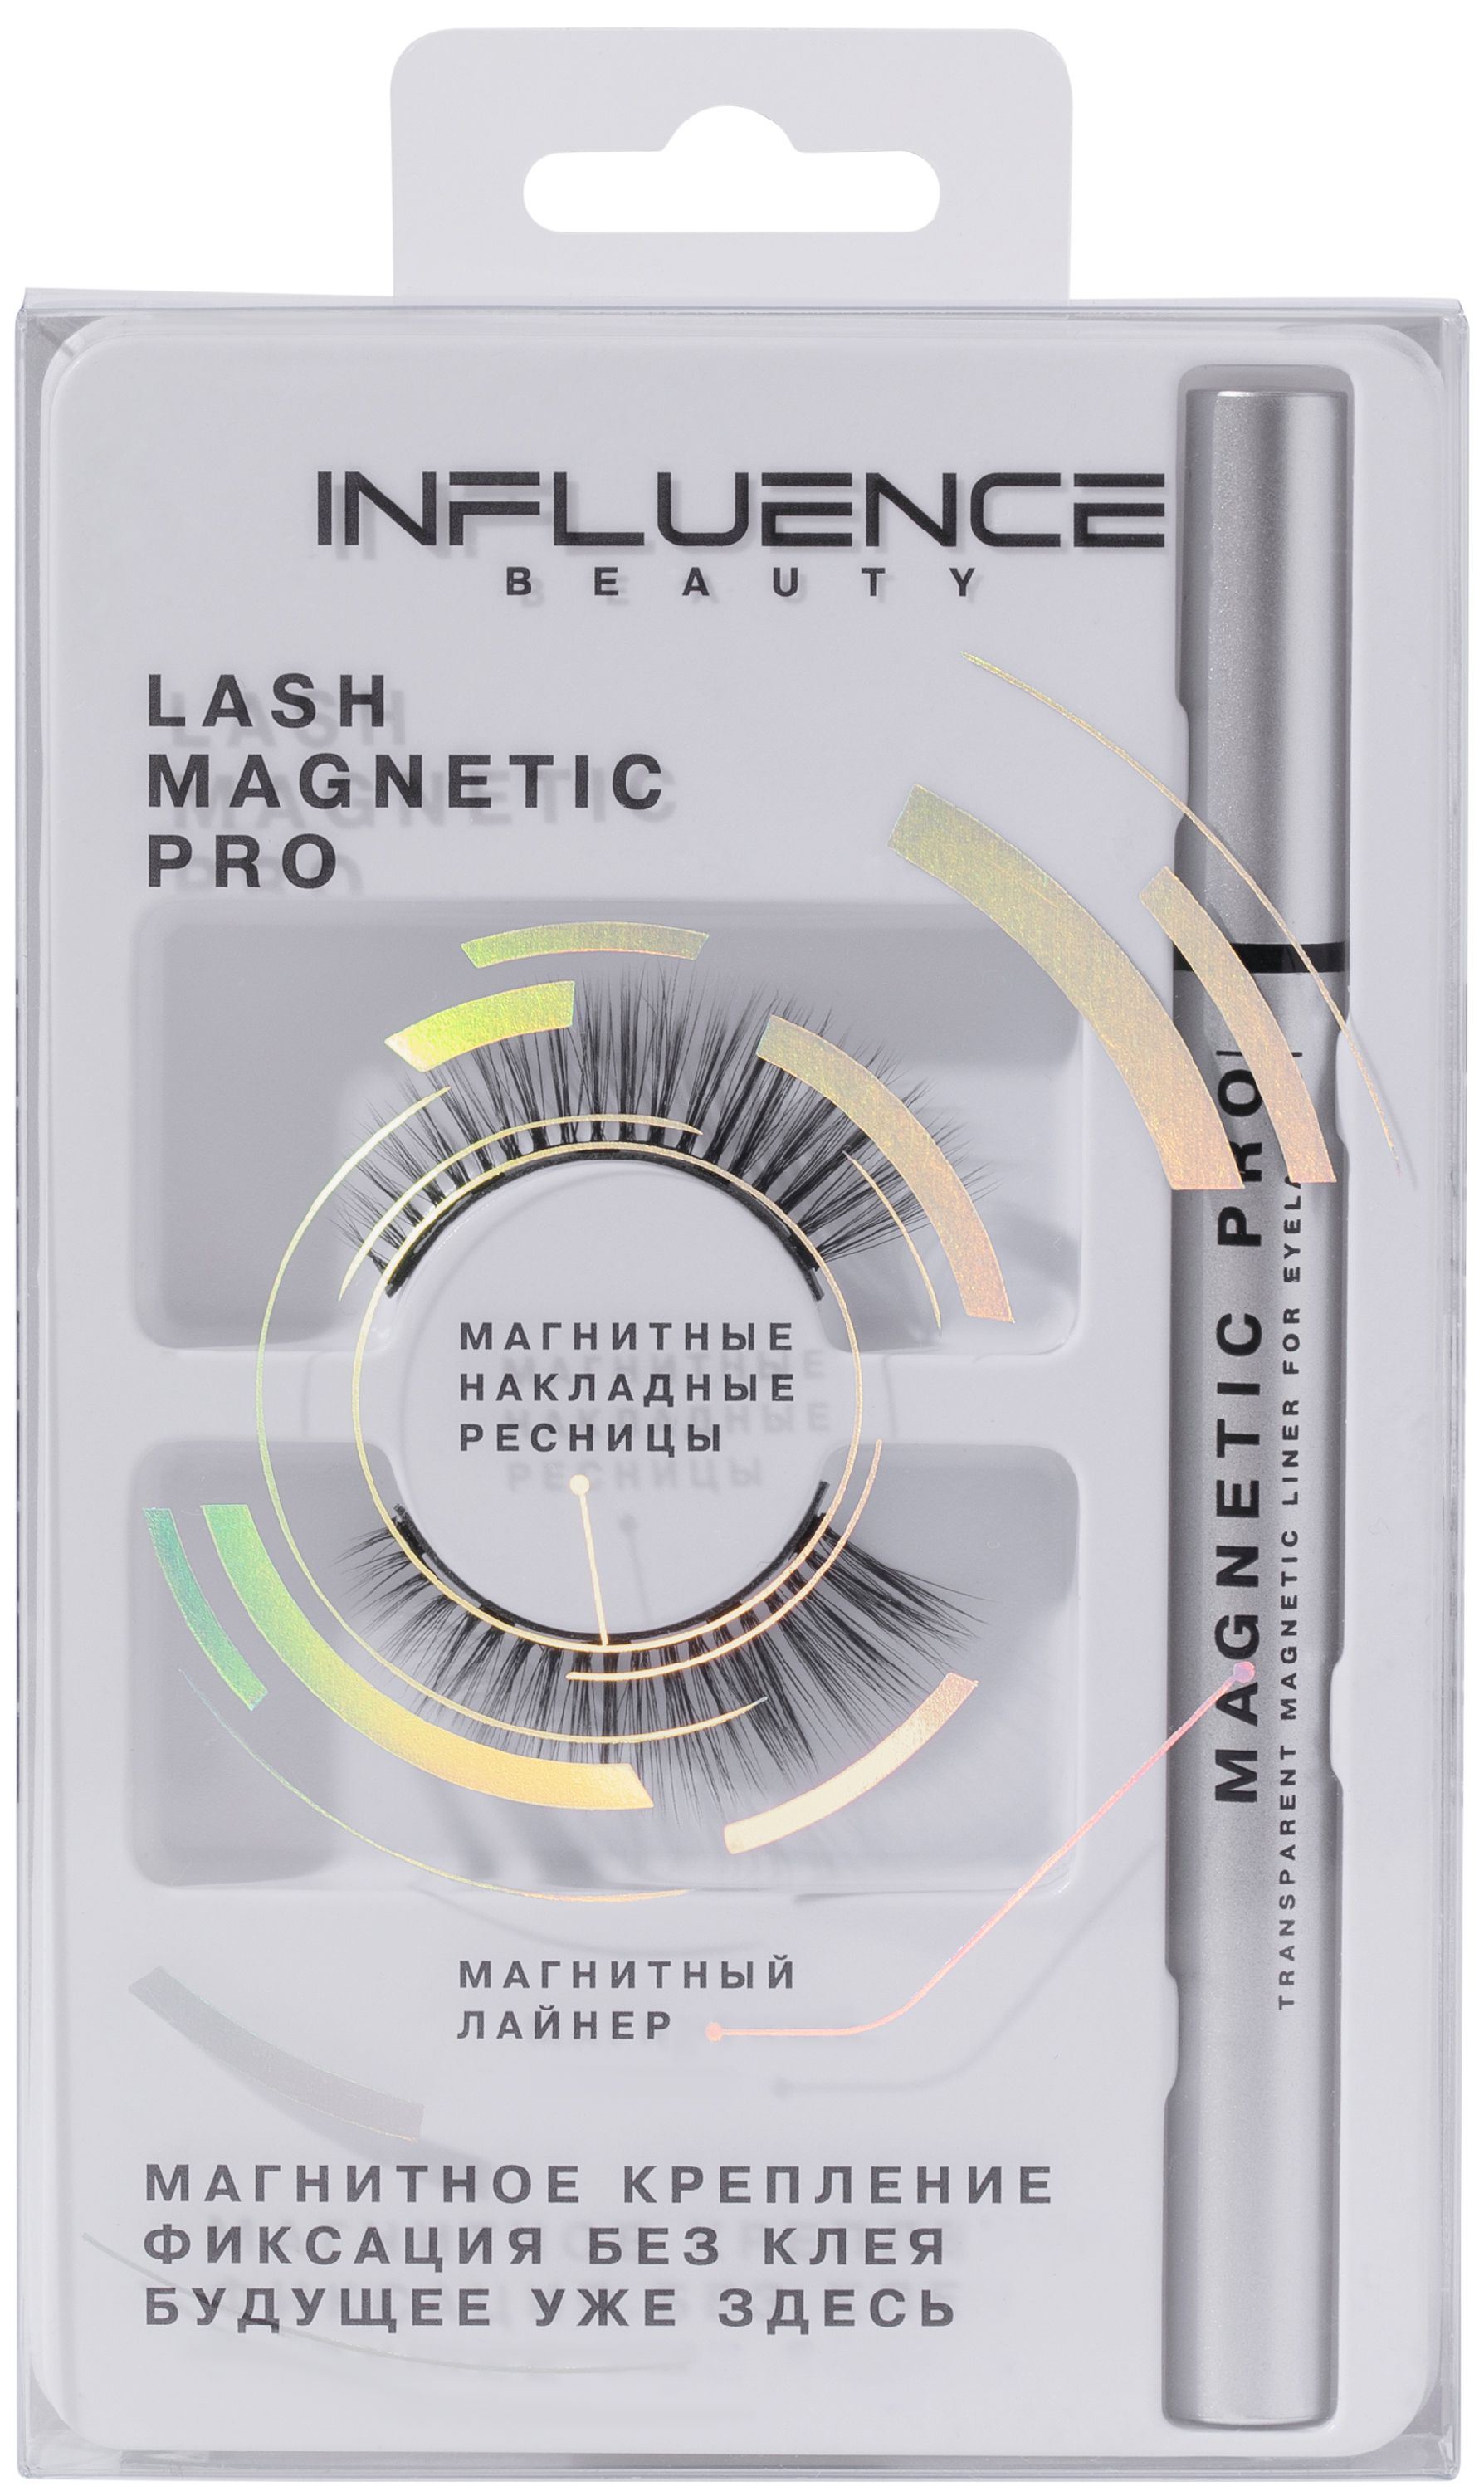 Накладные ресницы Influence Beauty Lash Magnetic Pro магнитные